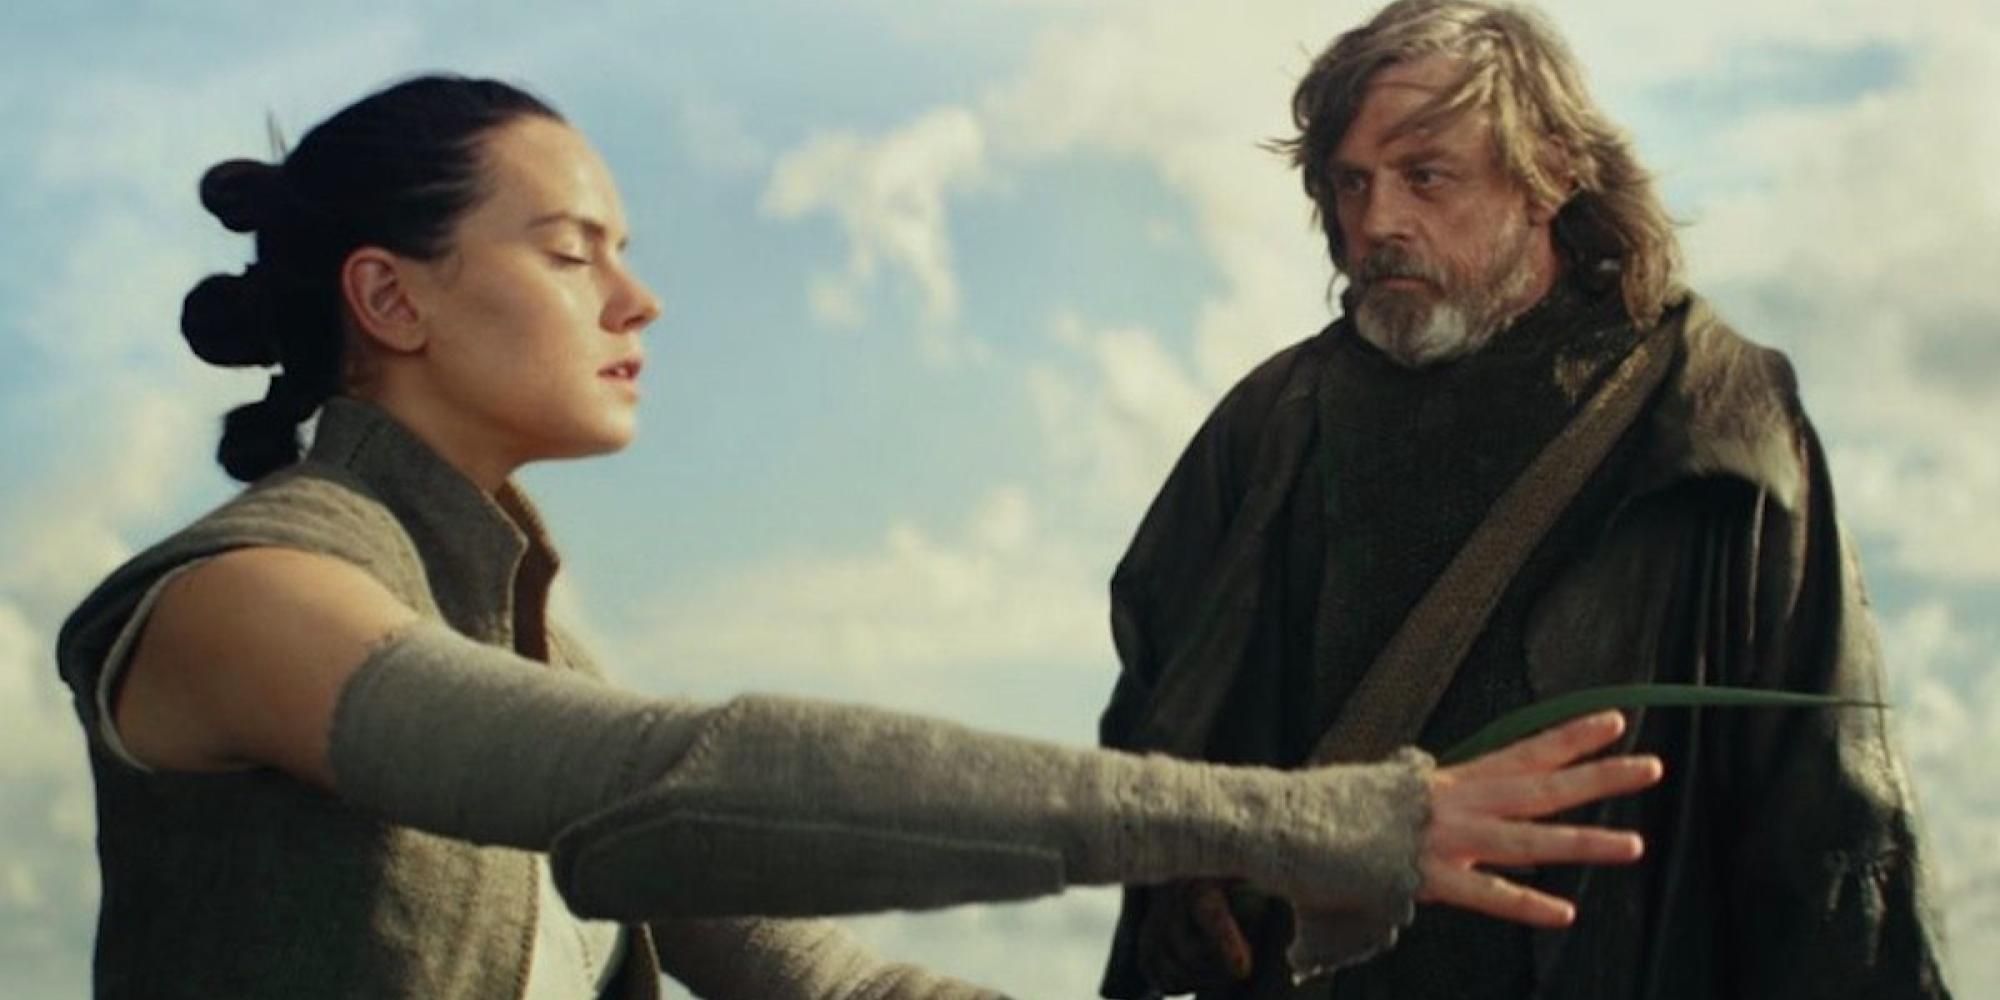 Rey and Luke Skywalker